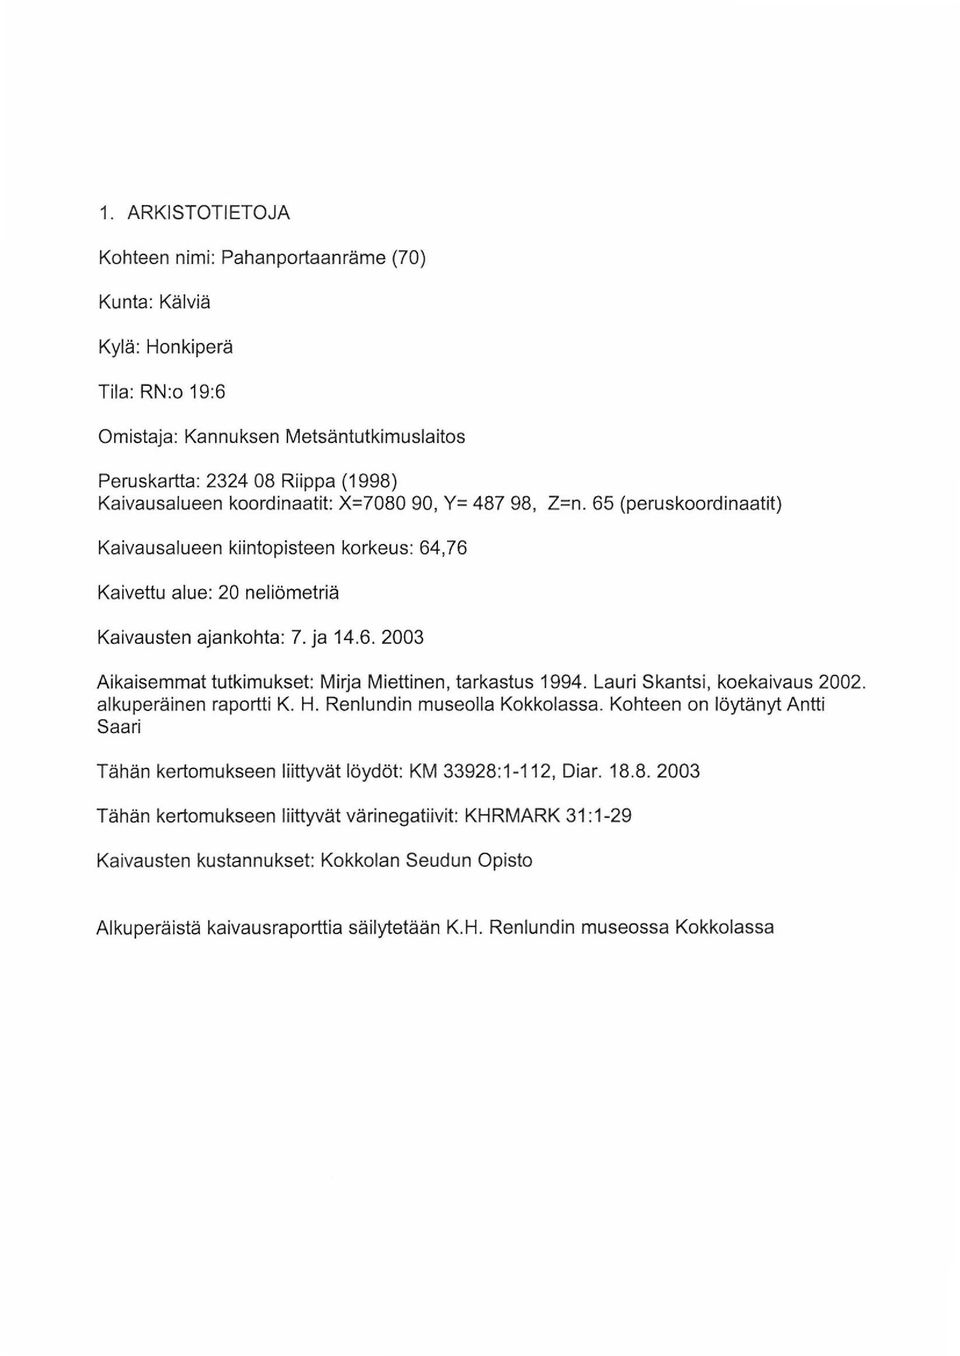 Lauri Skantsi, koekaivaus 2002. alkuperäinen raportti K. H. Renlundin museolla Kokkolassa. Kohteen on löytänyt Antti Saari Tähän kertomukseen liittyvät löydöt: KM 33928: